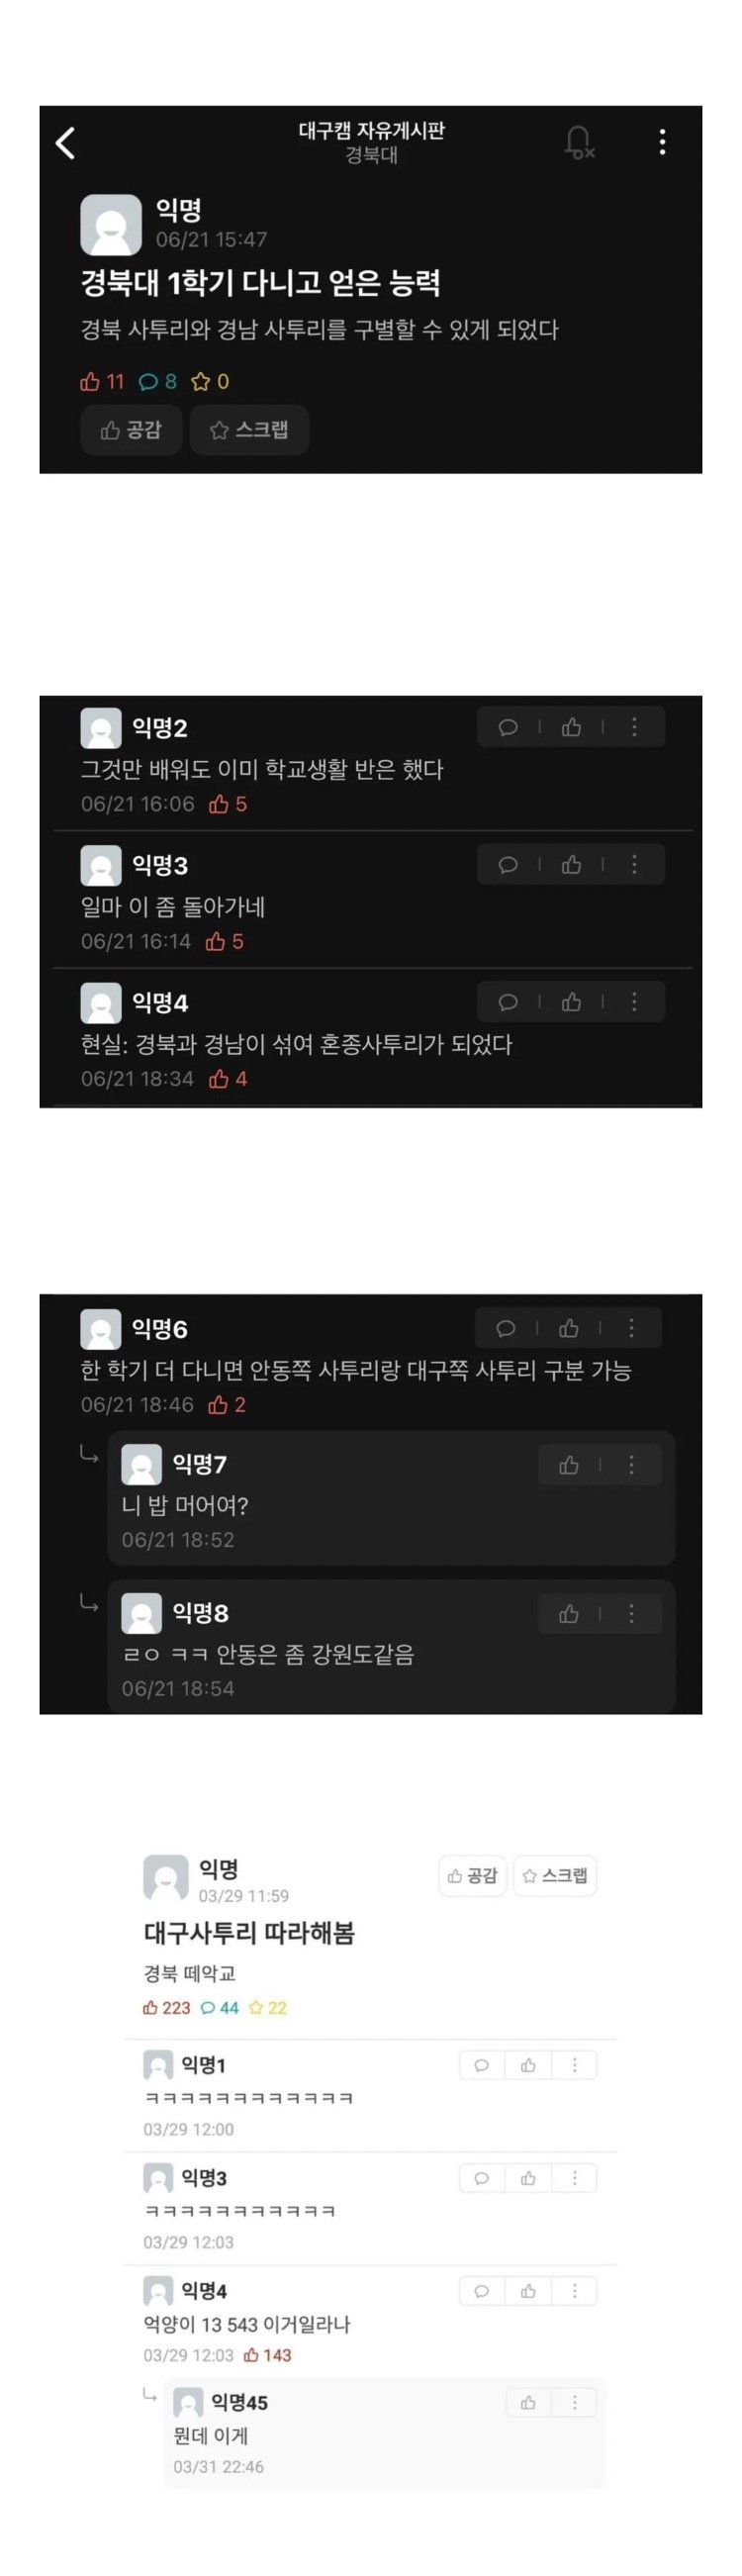 nokbeon.net-경북대 1년 다니고 얻은 능력-1번 이미지